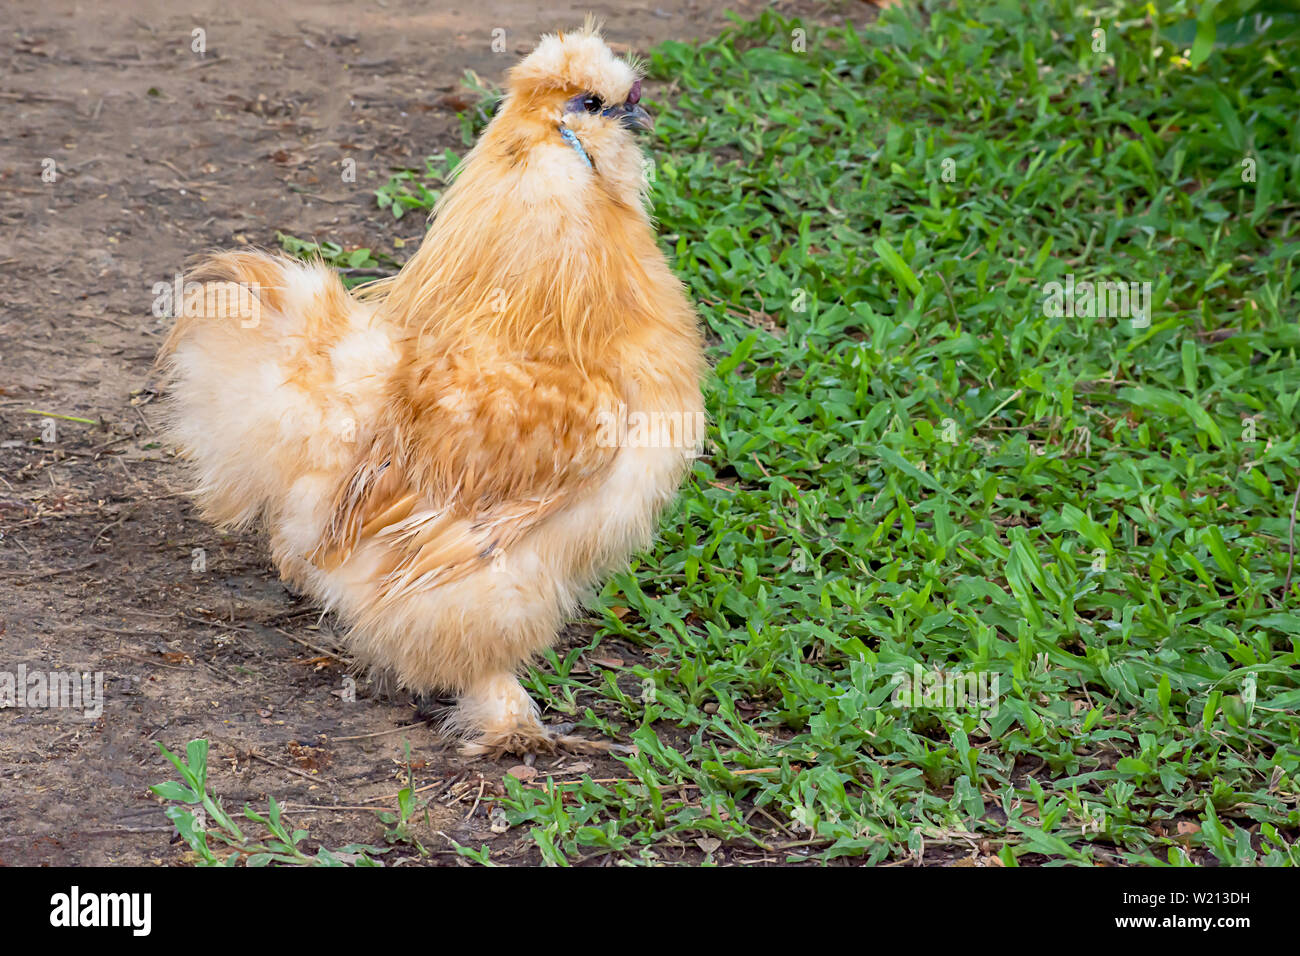 Pollo o gallina Silkie marrones en el césped en el jardín. Foto de stock